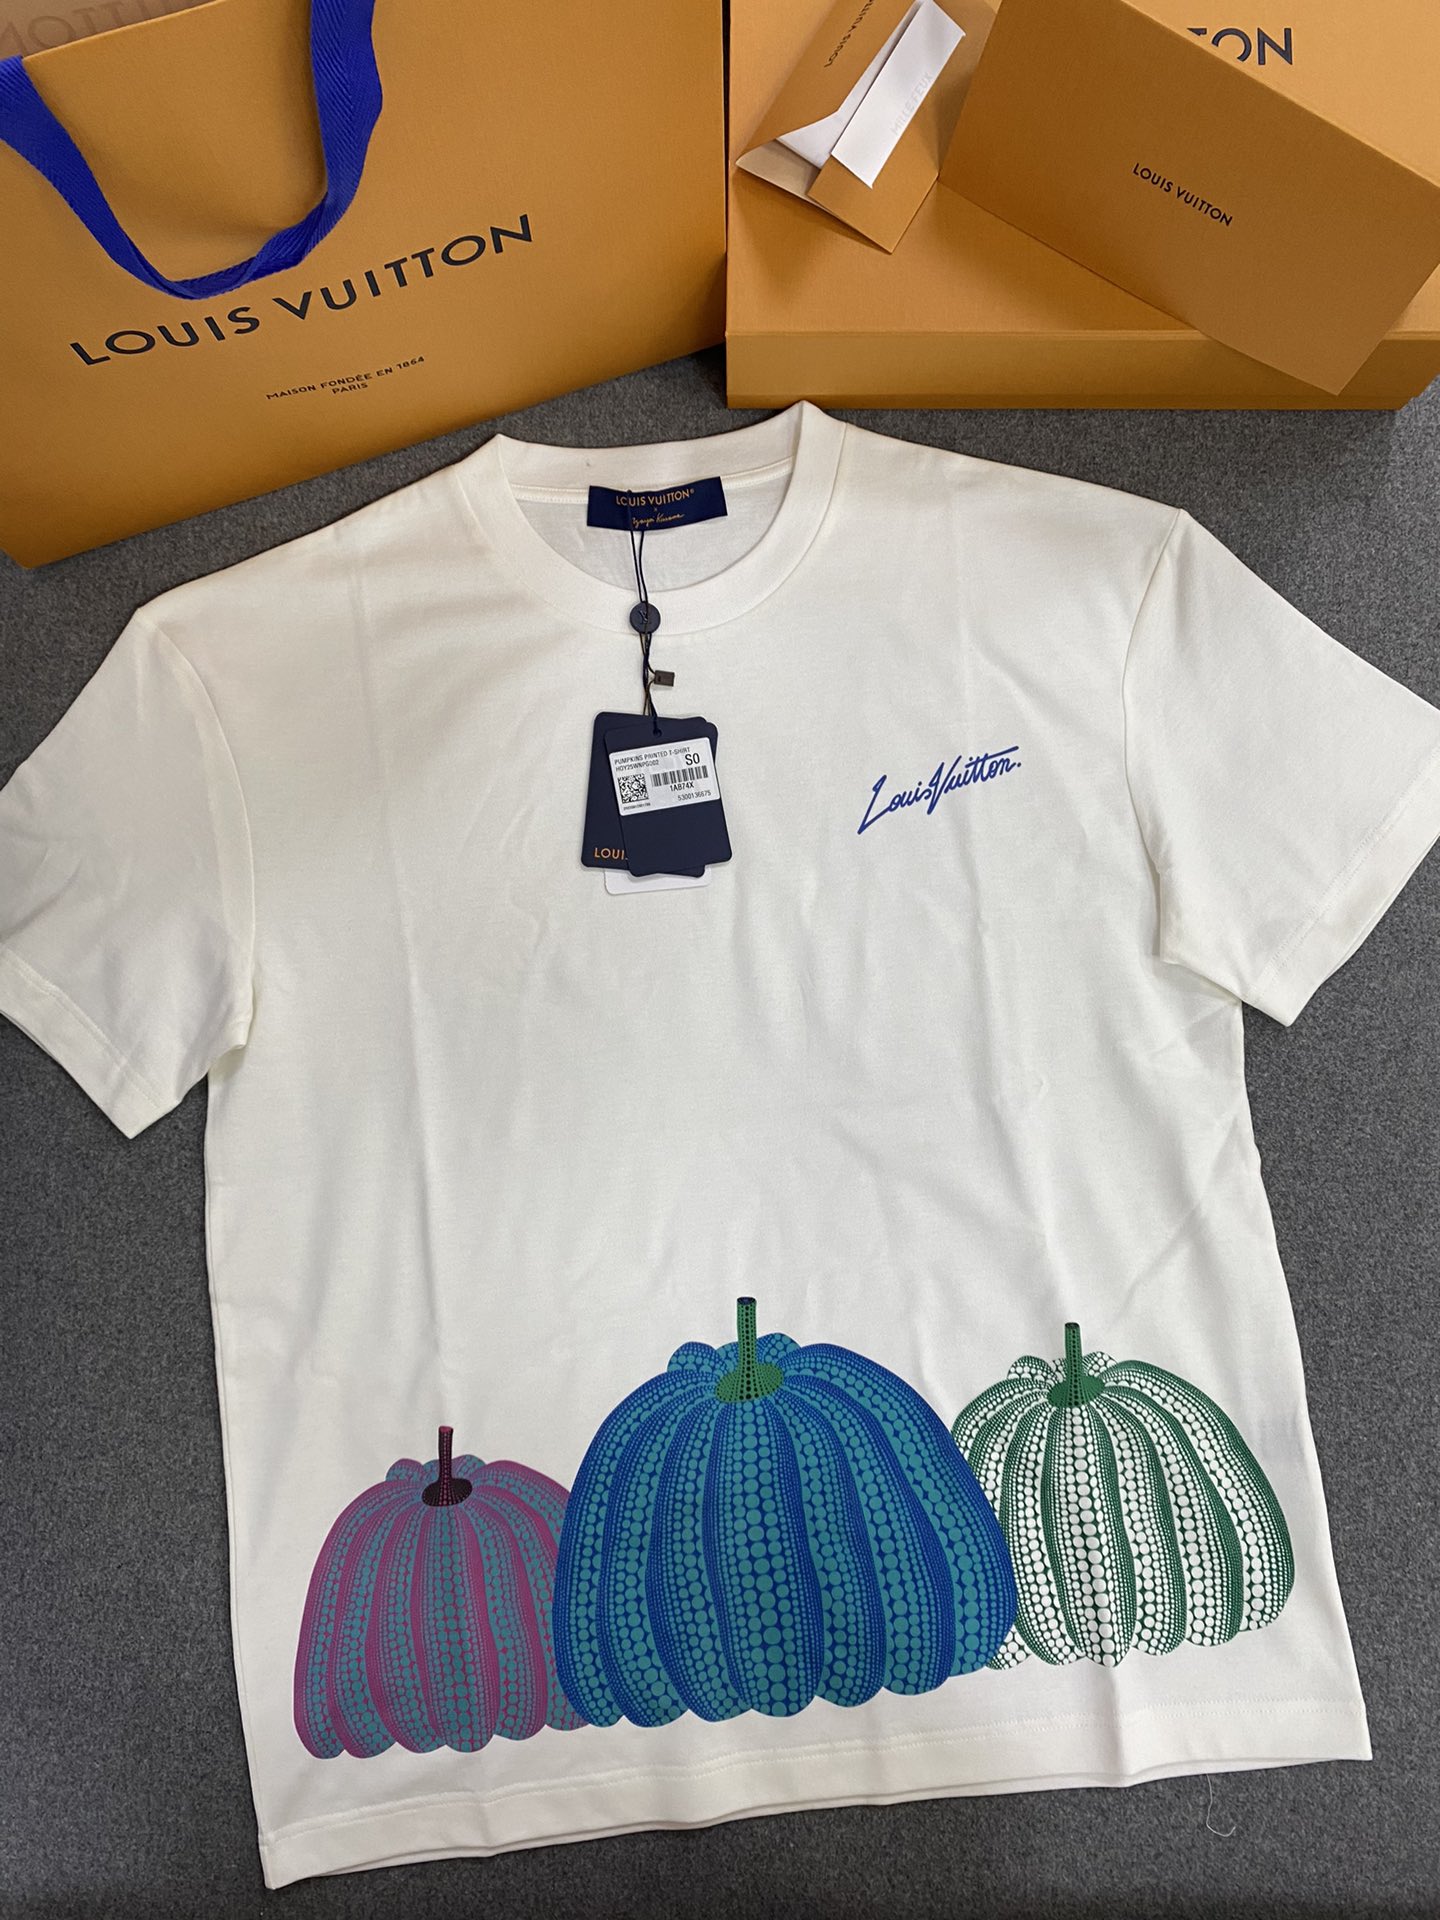 Louis Vuitton Clothing T-Shirt Pink Printing Cotton